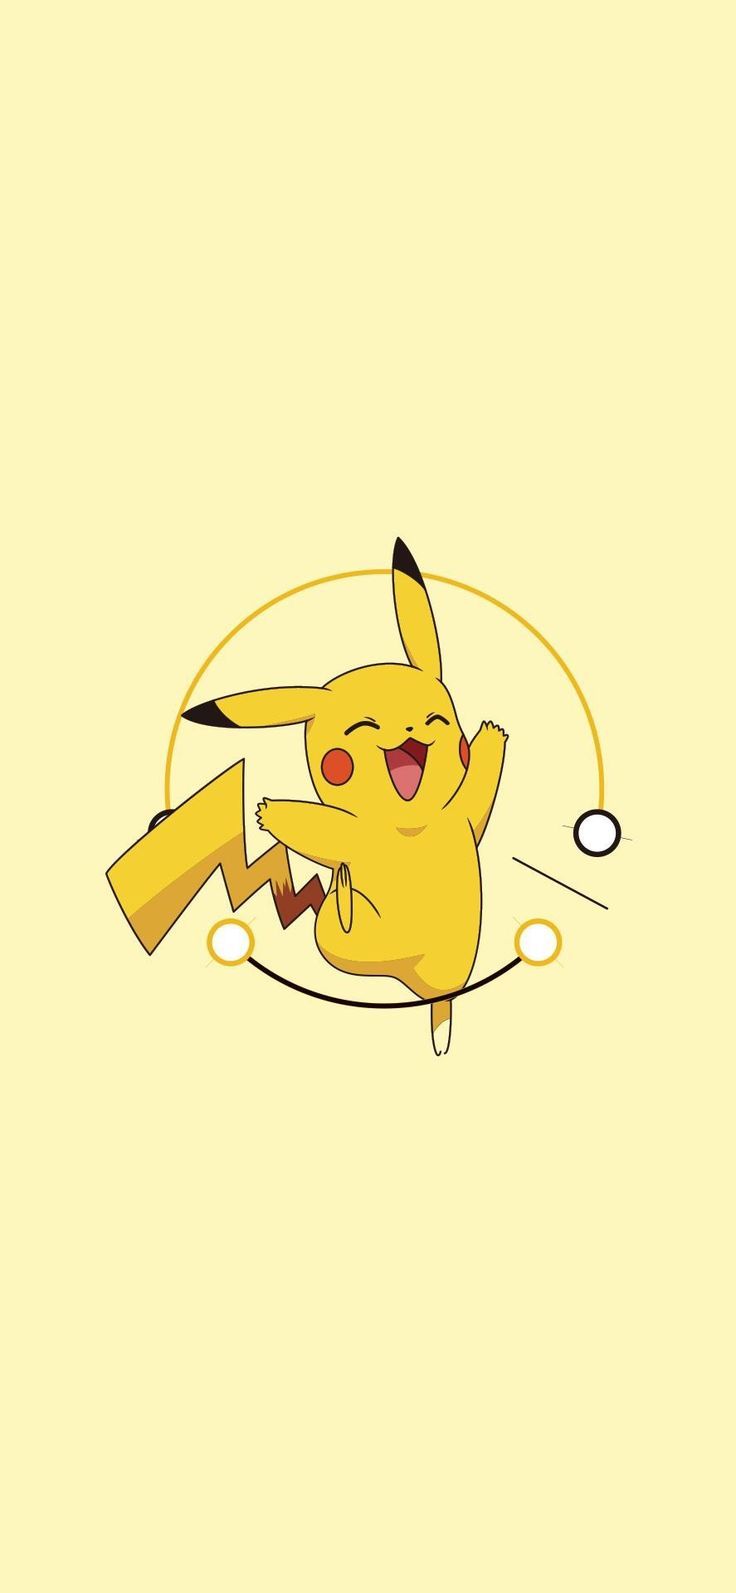 Edwin 文韩on wallpaper. Cute pikachu, Cute anime wallpaper, Cool pokemon wallpaper